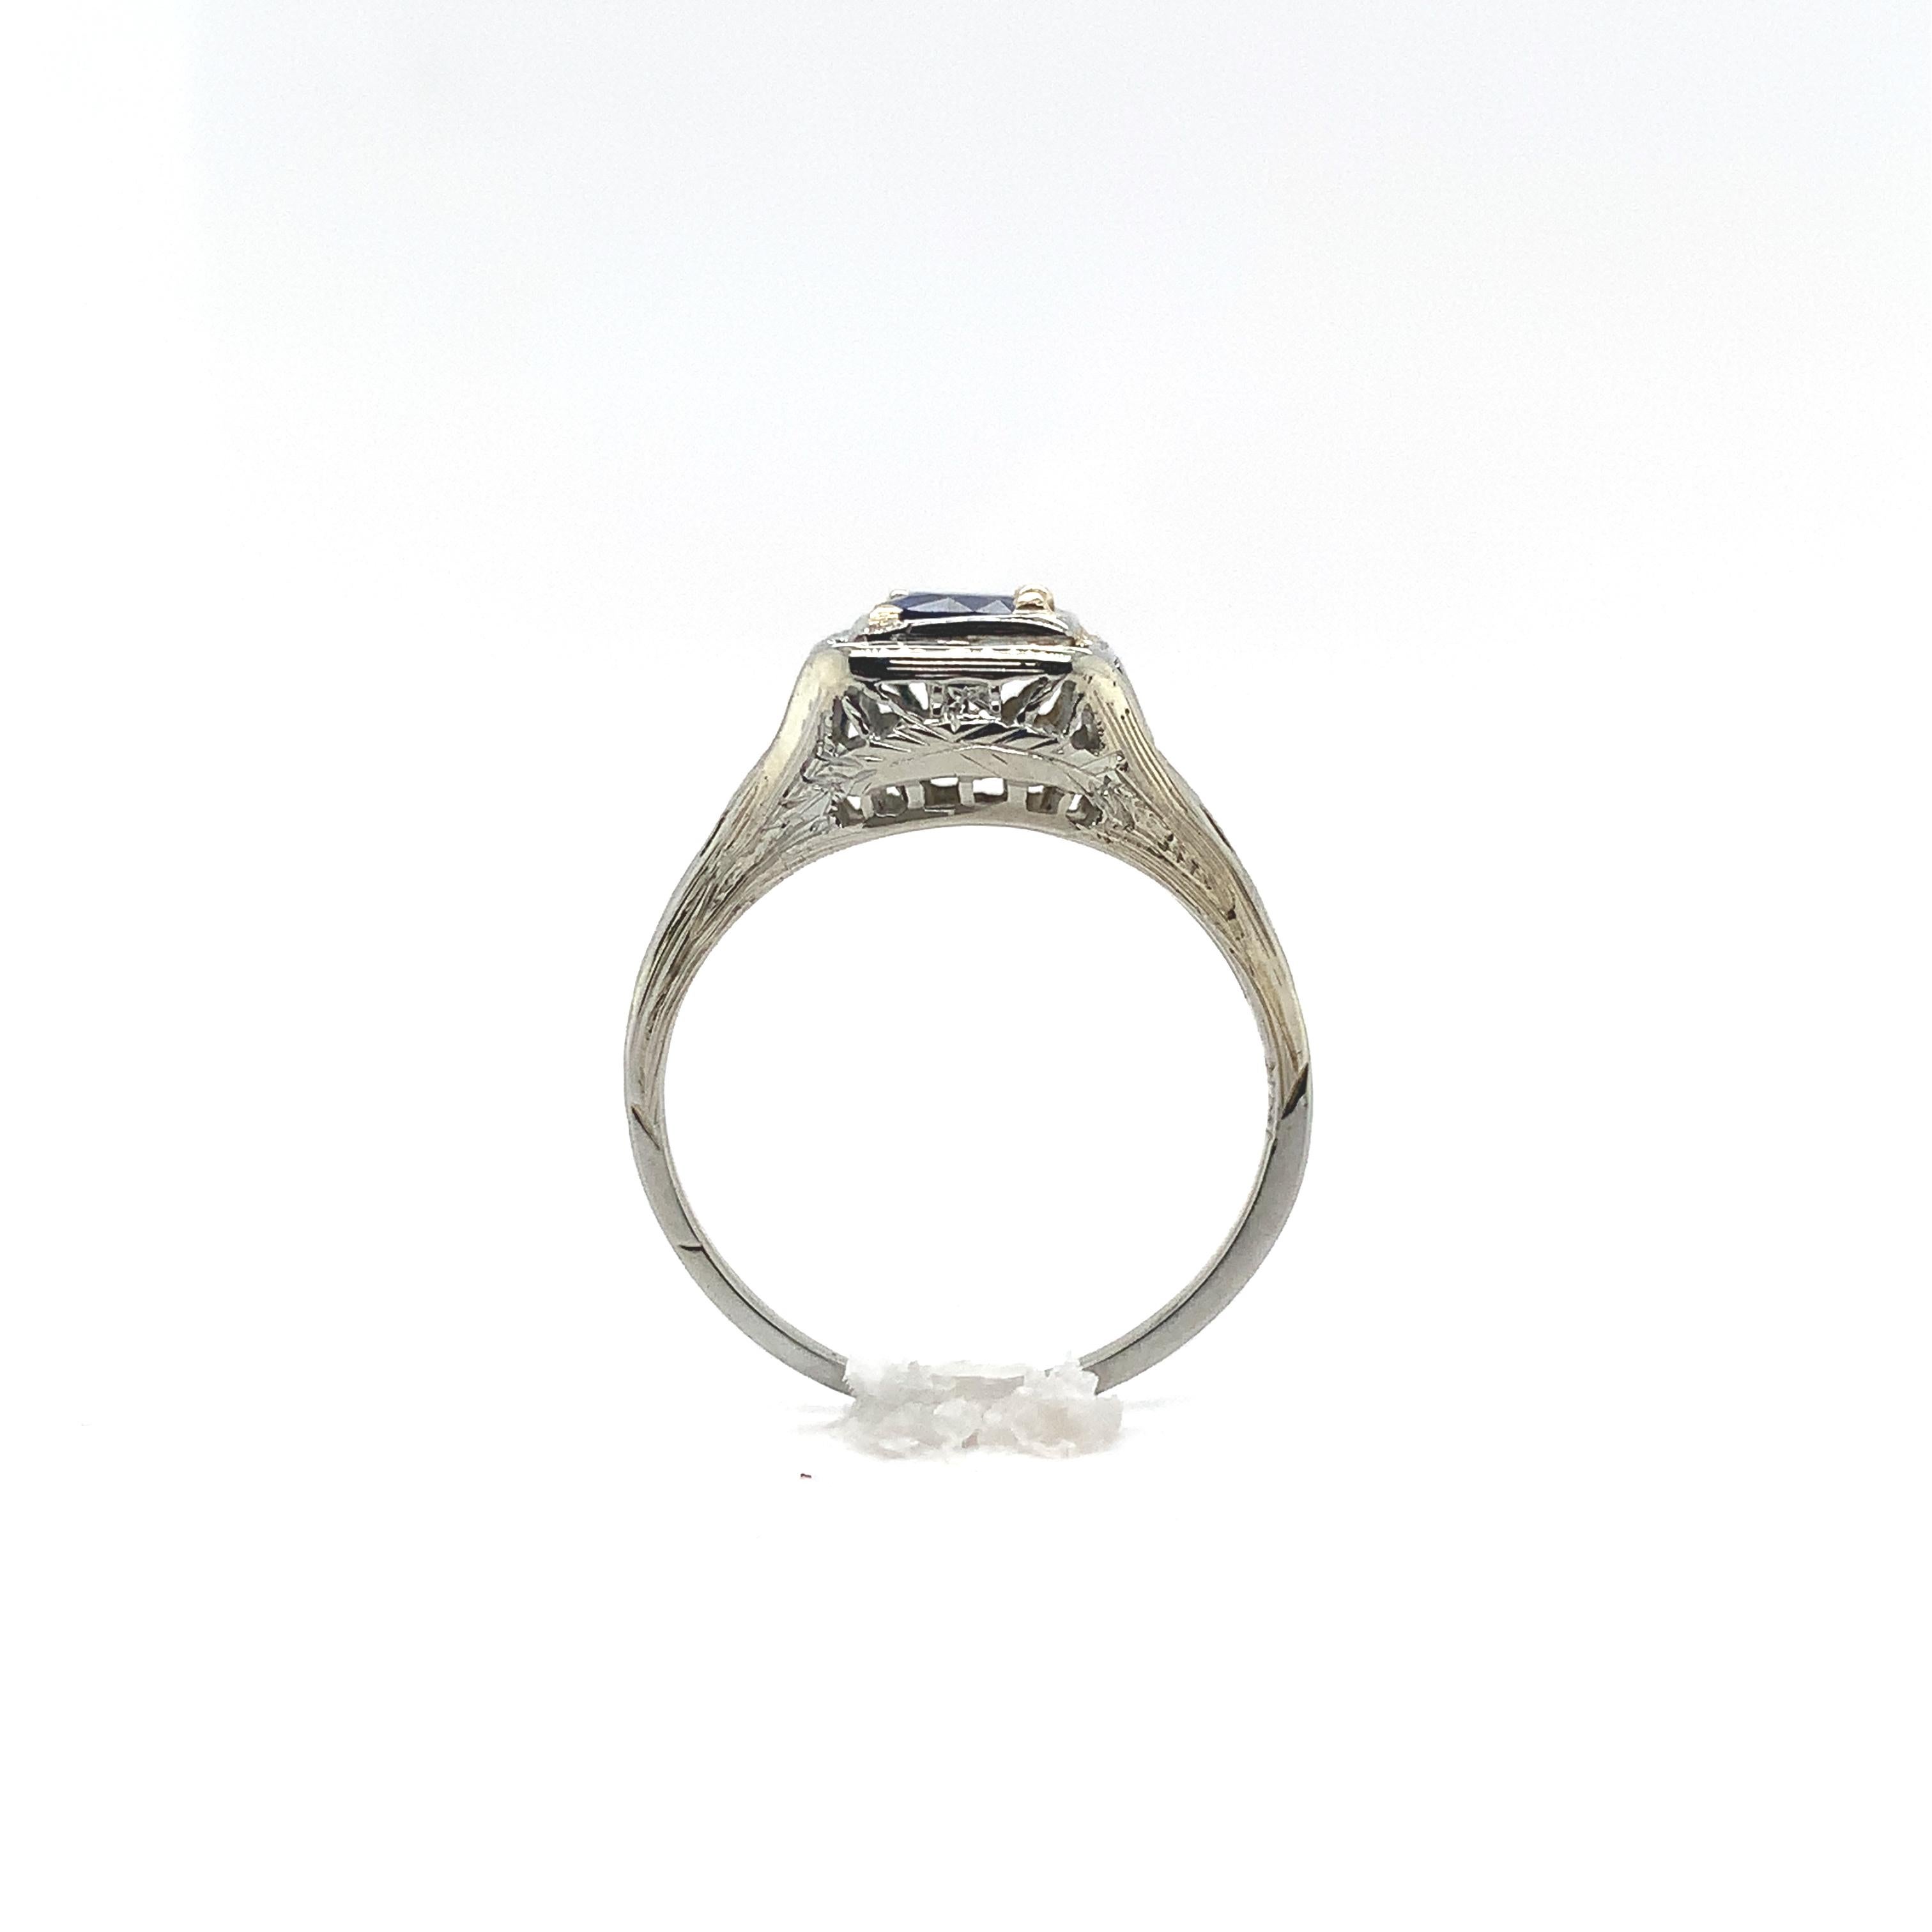 Filigraner Ring aus 18 Karat Weißgold im Art-Deco-Stil mit einem runden, echten blauen Saphir von 0,57 Karat. Der Saphir hat eine dunkelblaue Farbe und misst etwa 4,8 mm.  Es gibt handgravierte Details und auch einen glatten Bereich, in dem Ringe